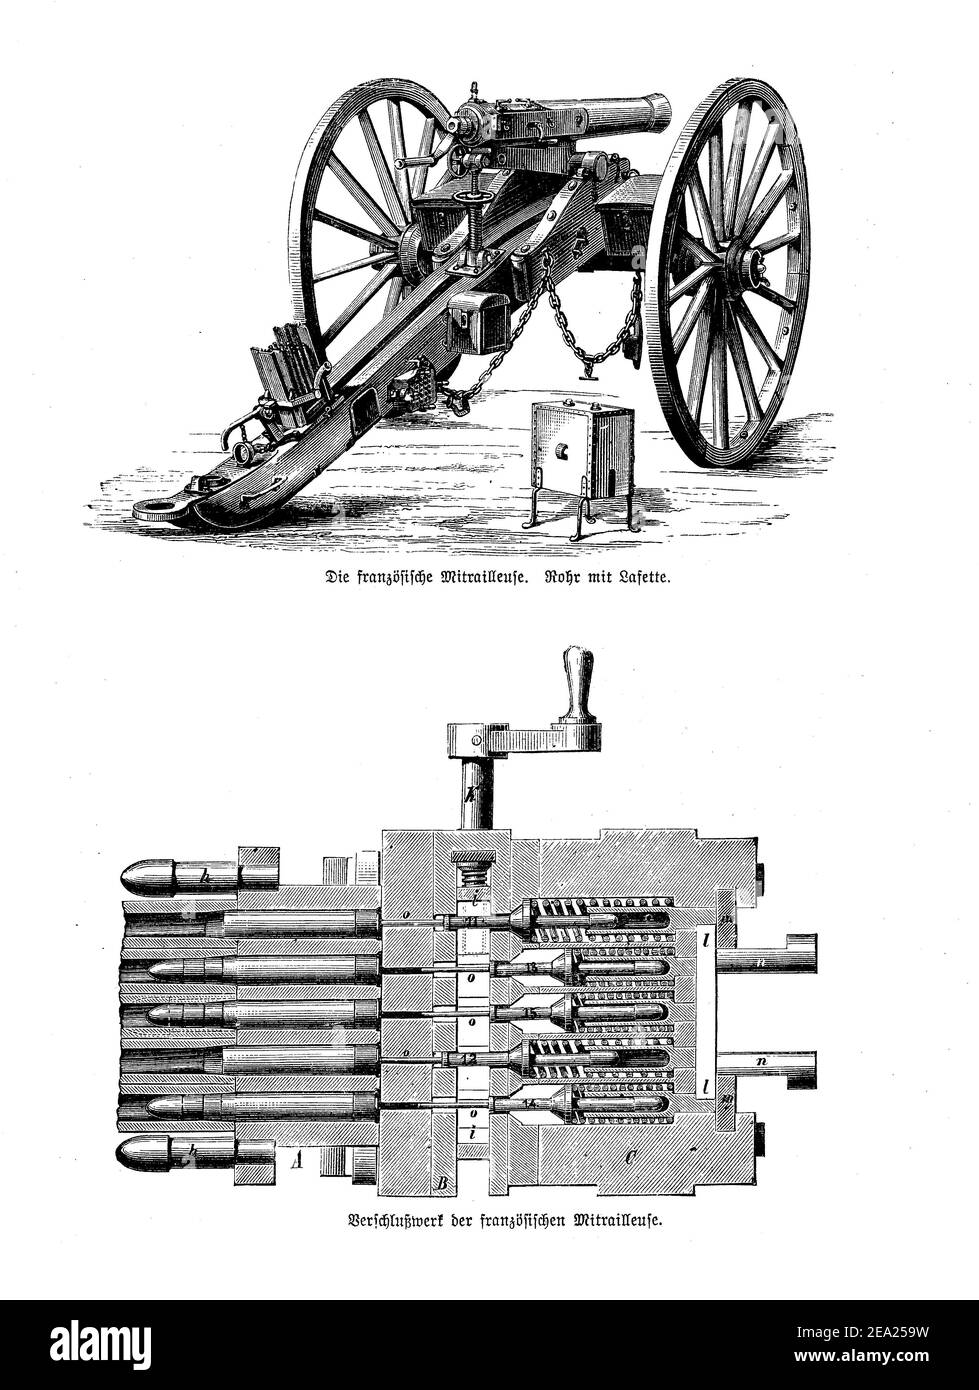 Französisch mitrailleuse, Maschinengewehr auf Chassis-Lafette montiert, mit Detail der Patrone Magazin und Lademechanismus, Ende des 19th. Jahrhunderts Stockfoto